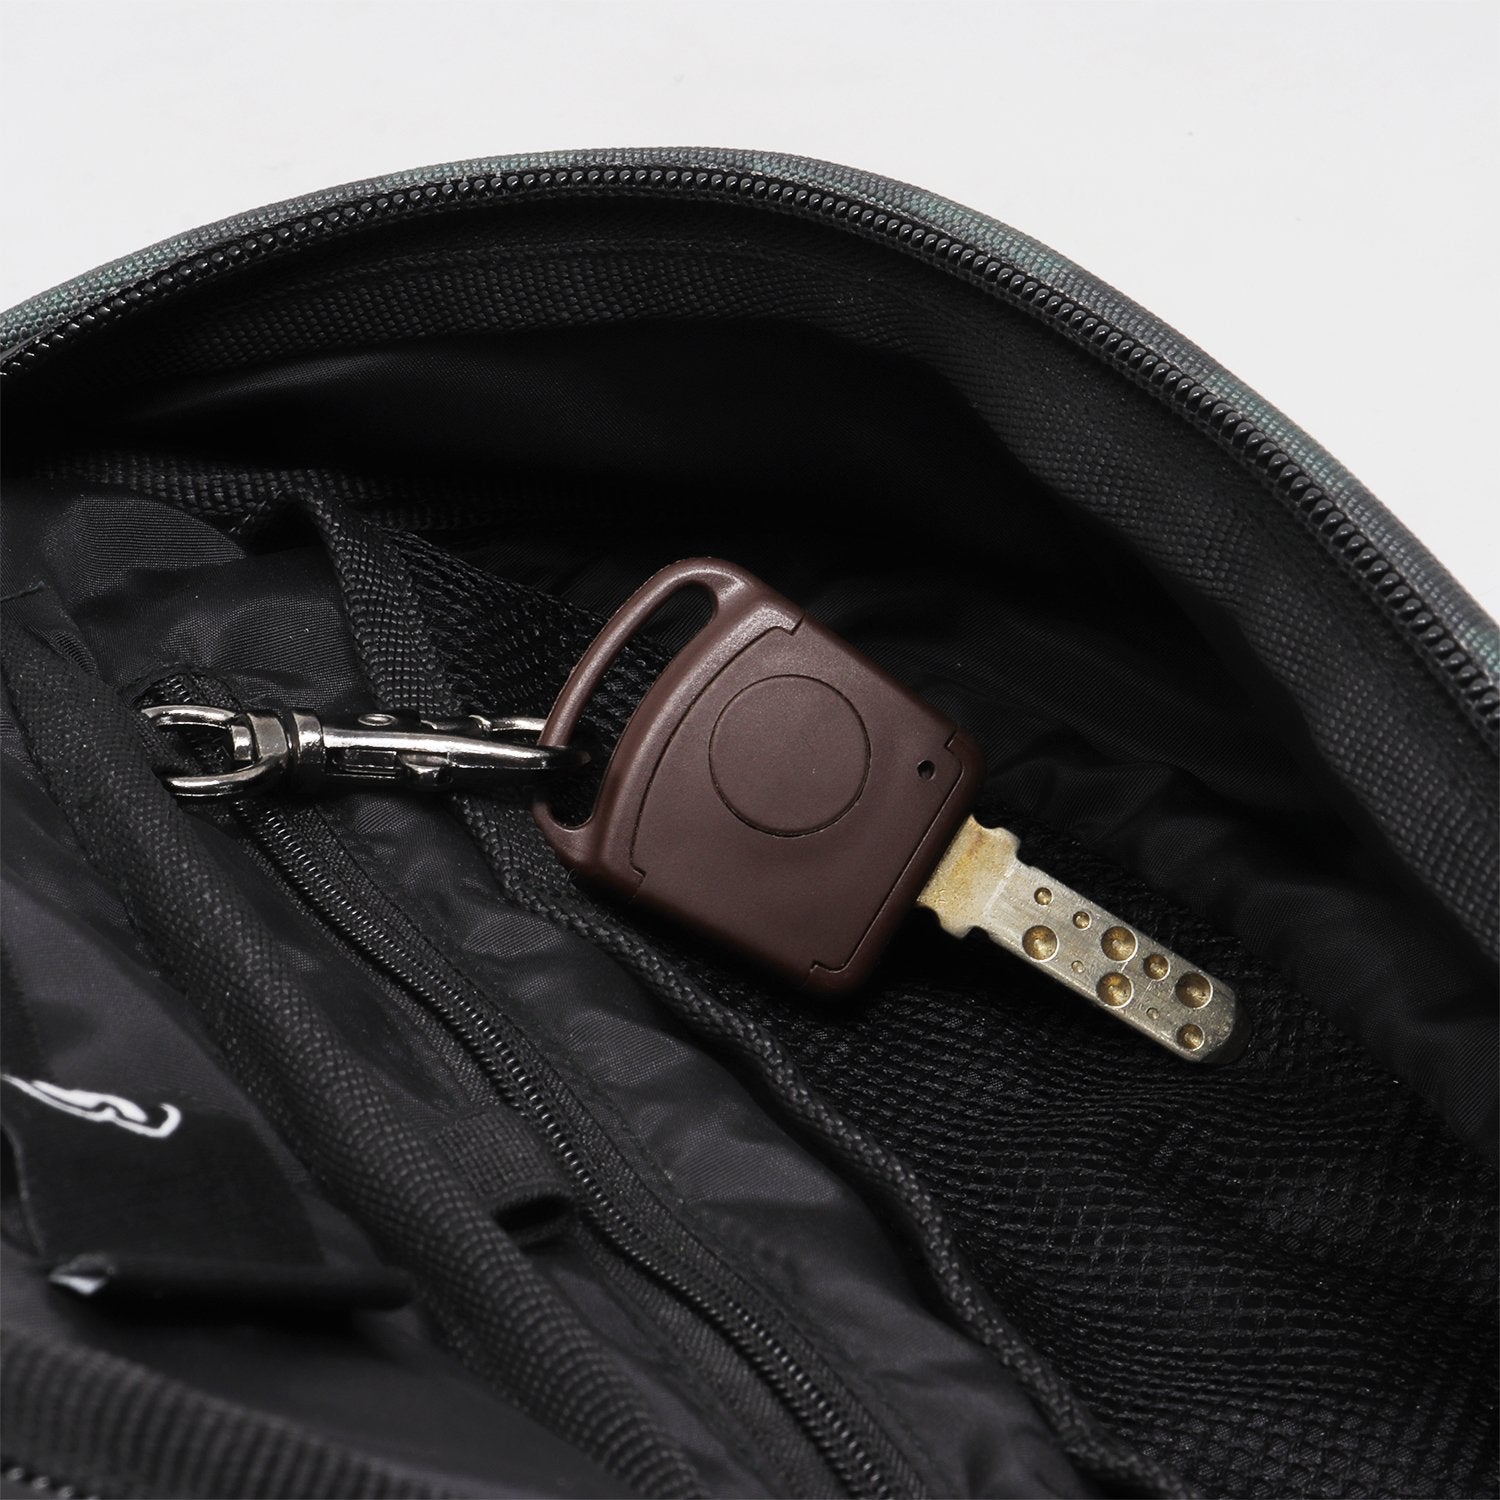 Supervek Crossbody Slinger - Carbon Black - Urban Functional Fanny Hip Bag for Everyday Essentials - Key Holder